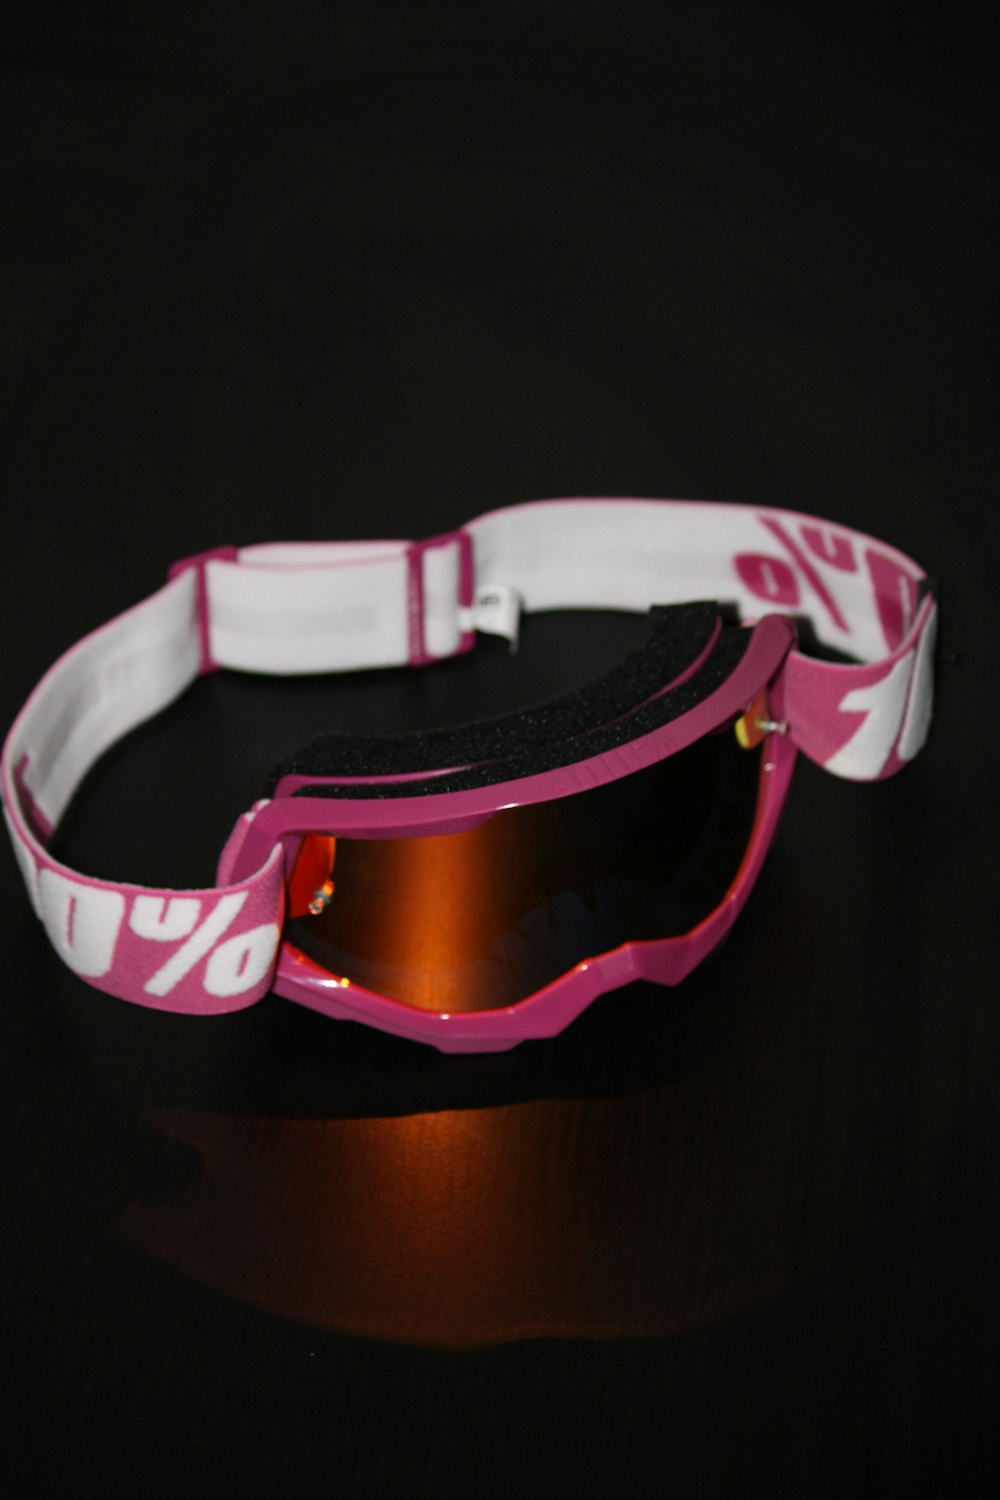 Bracelet violet et blanc sur textile noir